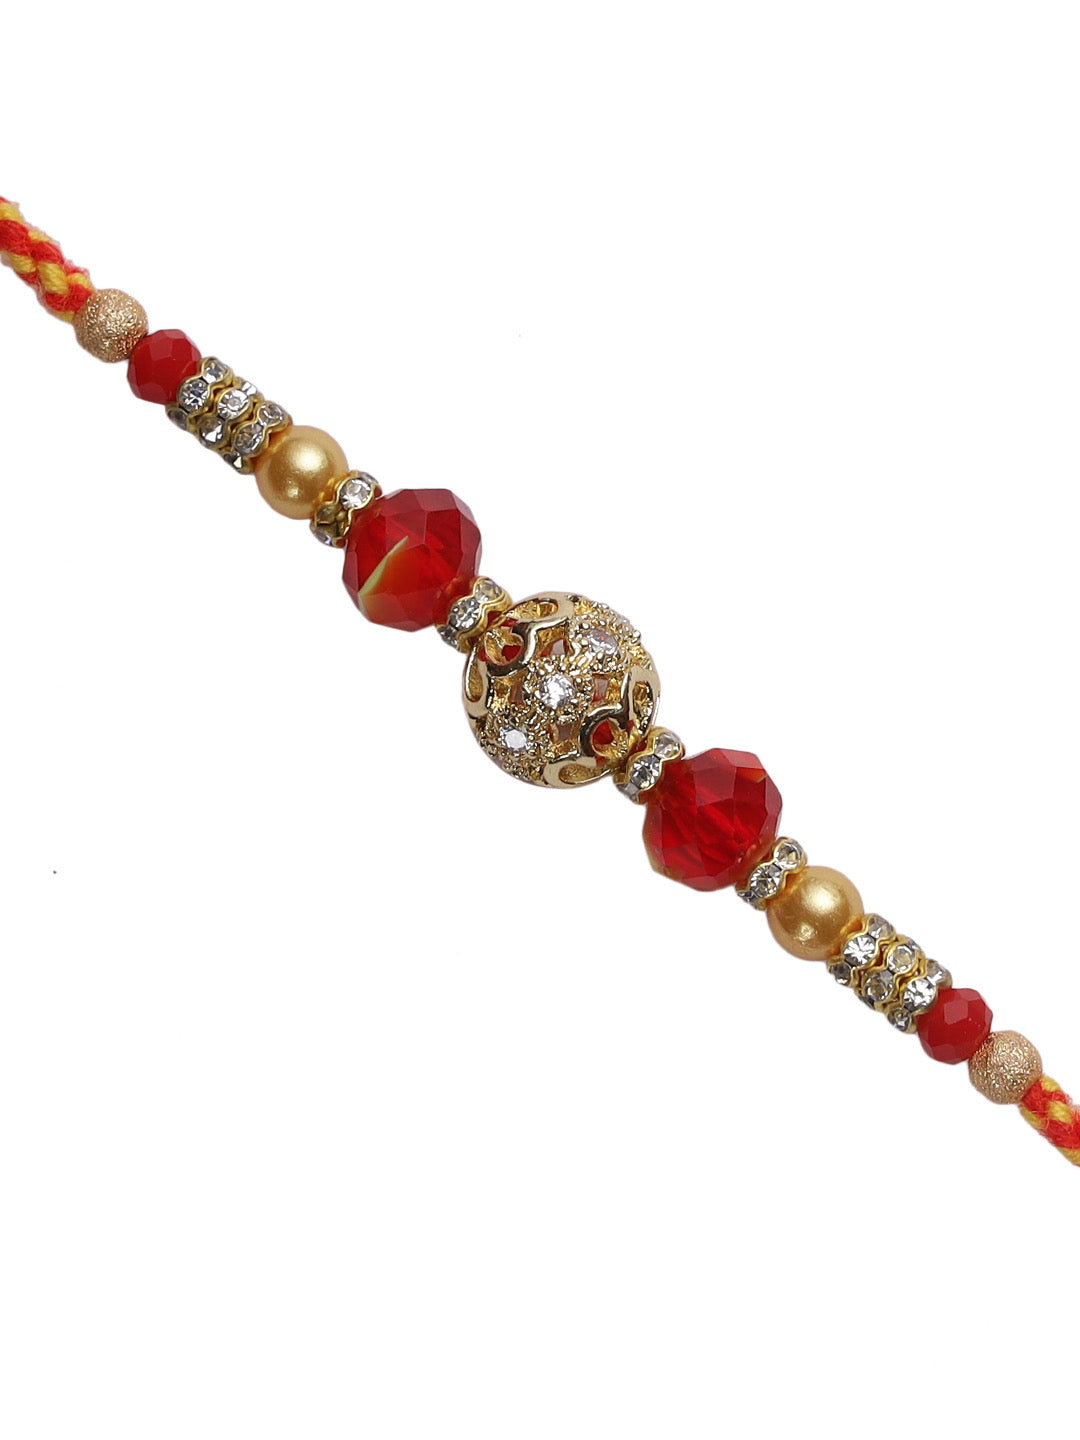 Sobre Golden Ball Rakhi with Beads and Rings - Only Rakhi (RJ22164)